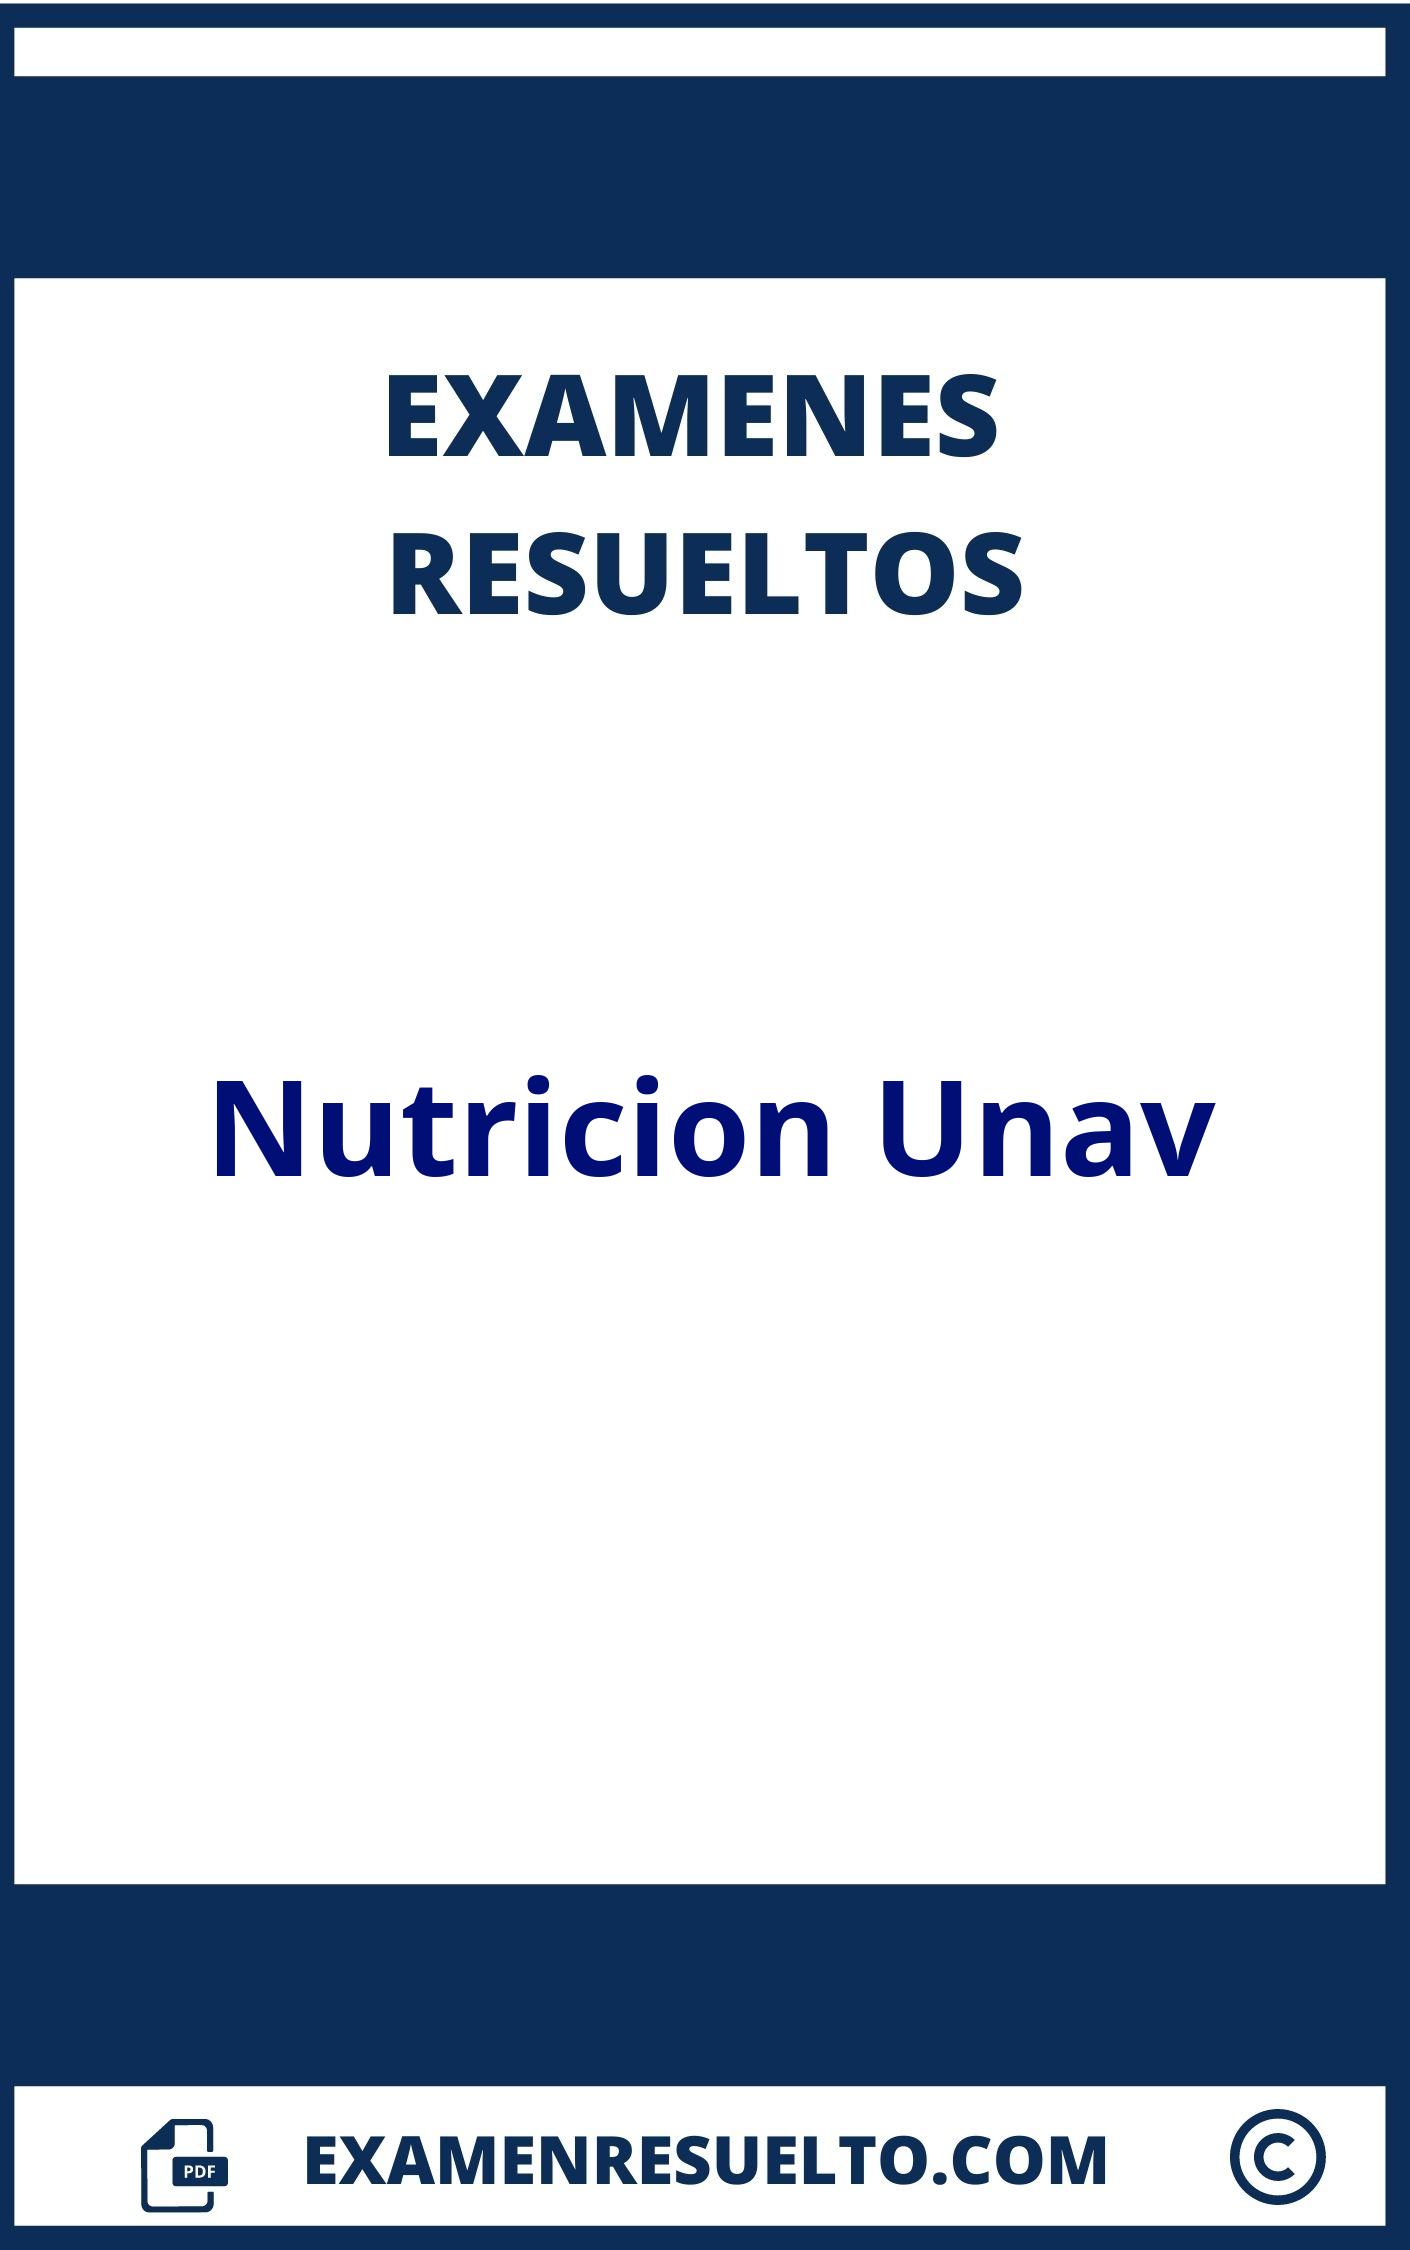 Examenes Nutricion Unav Resueltos